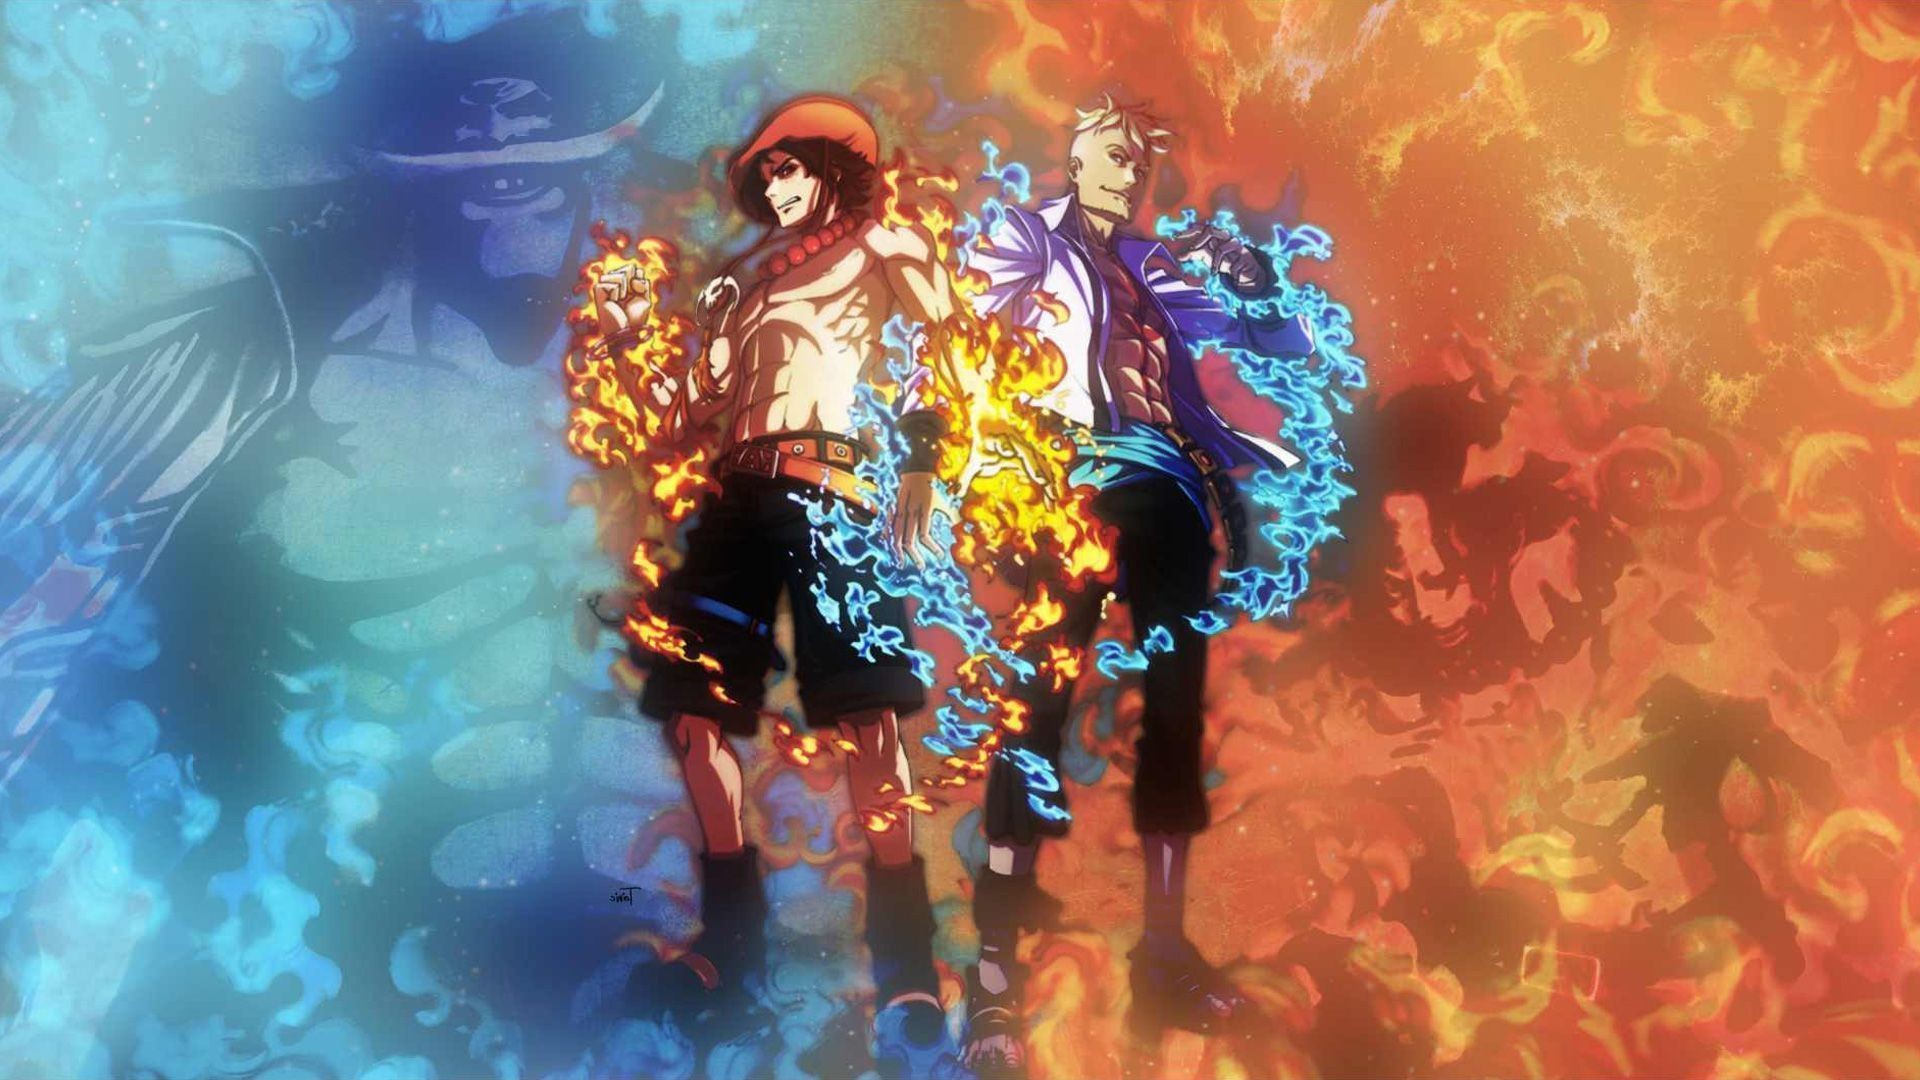 Luffy và Ace - hai anh em của nhóm Mũ Rơm luôn làm say đắm trái tim của người hâm mộ anime. Hình ảnh đầy cảm xúc về tình anh em sẽ khiến bạn đắm chìm trong câu chuyện vô cùng cảm động. Hãy đến với chúng tôi để xem những hình ảnh đẹp nhất về Luffy và Ace.